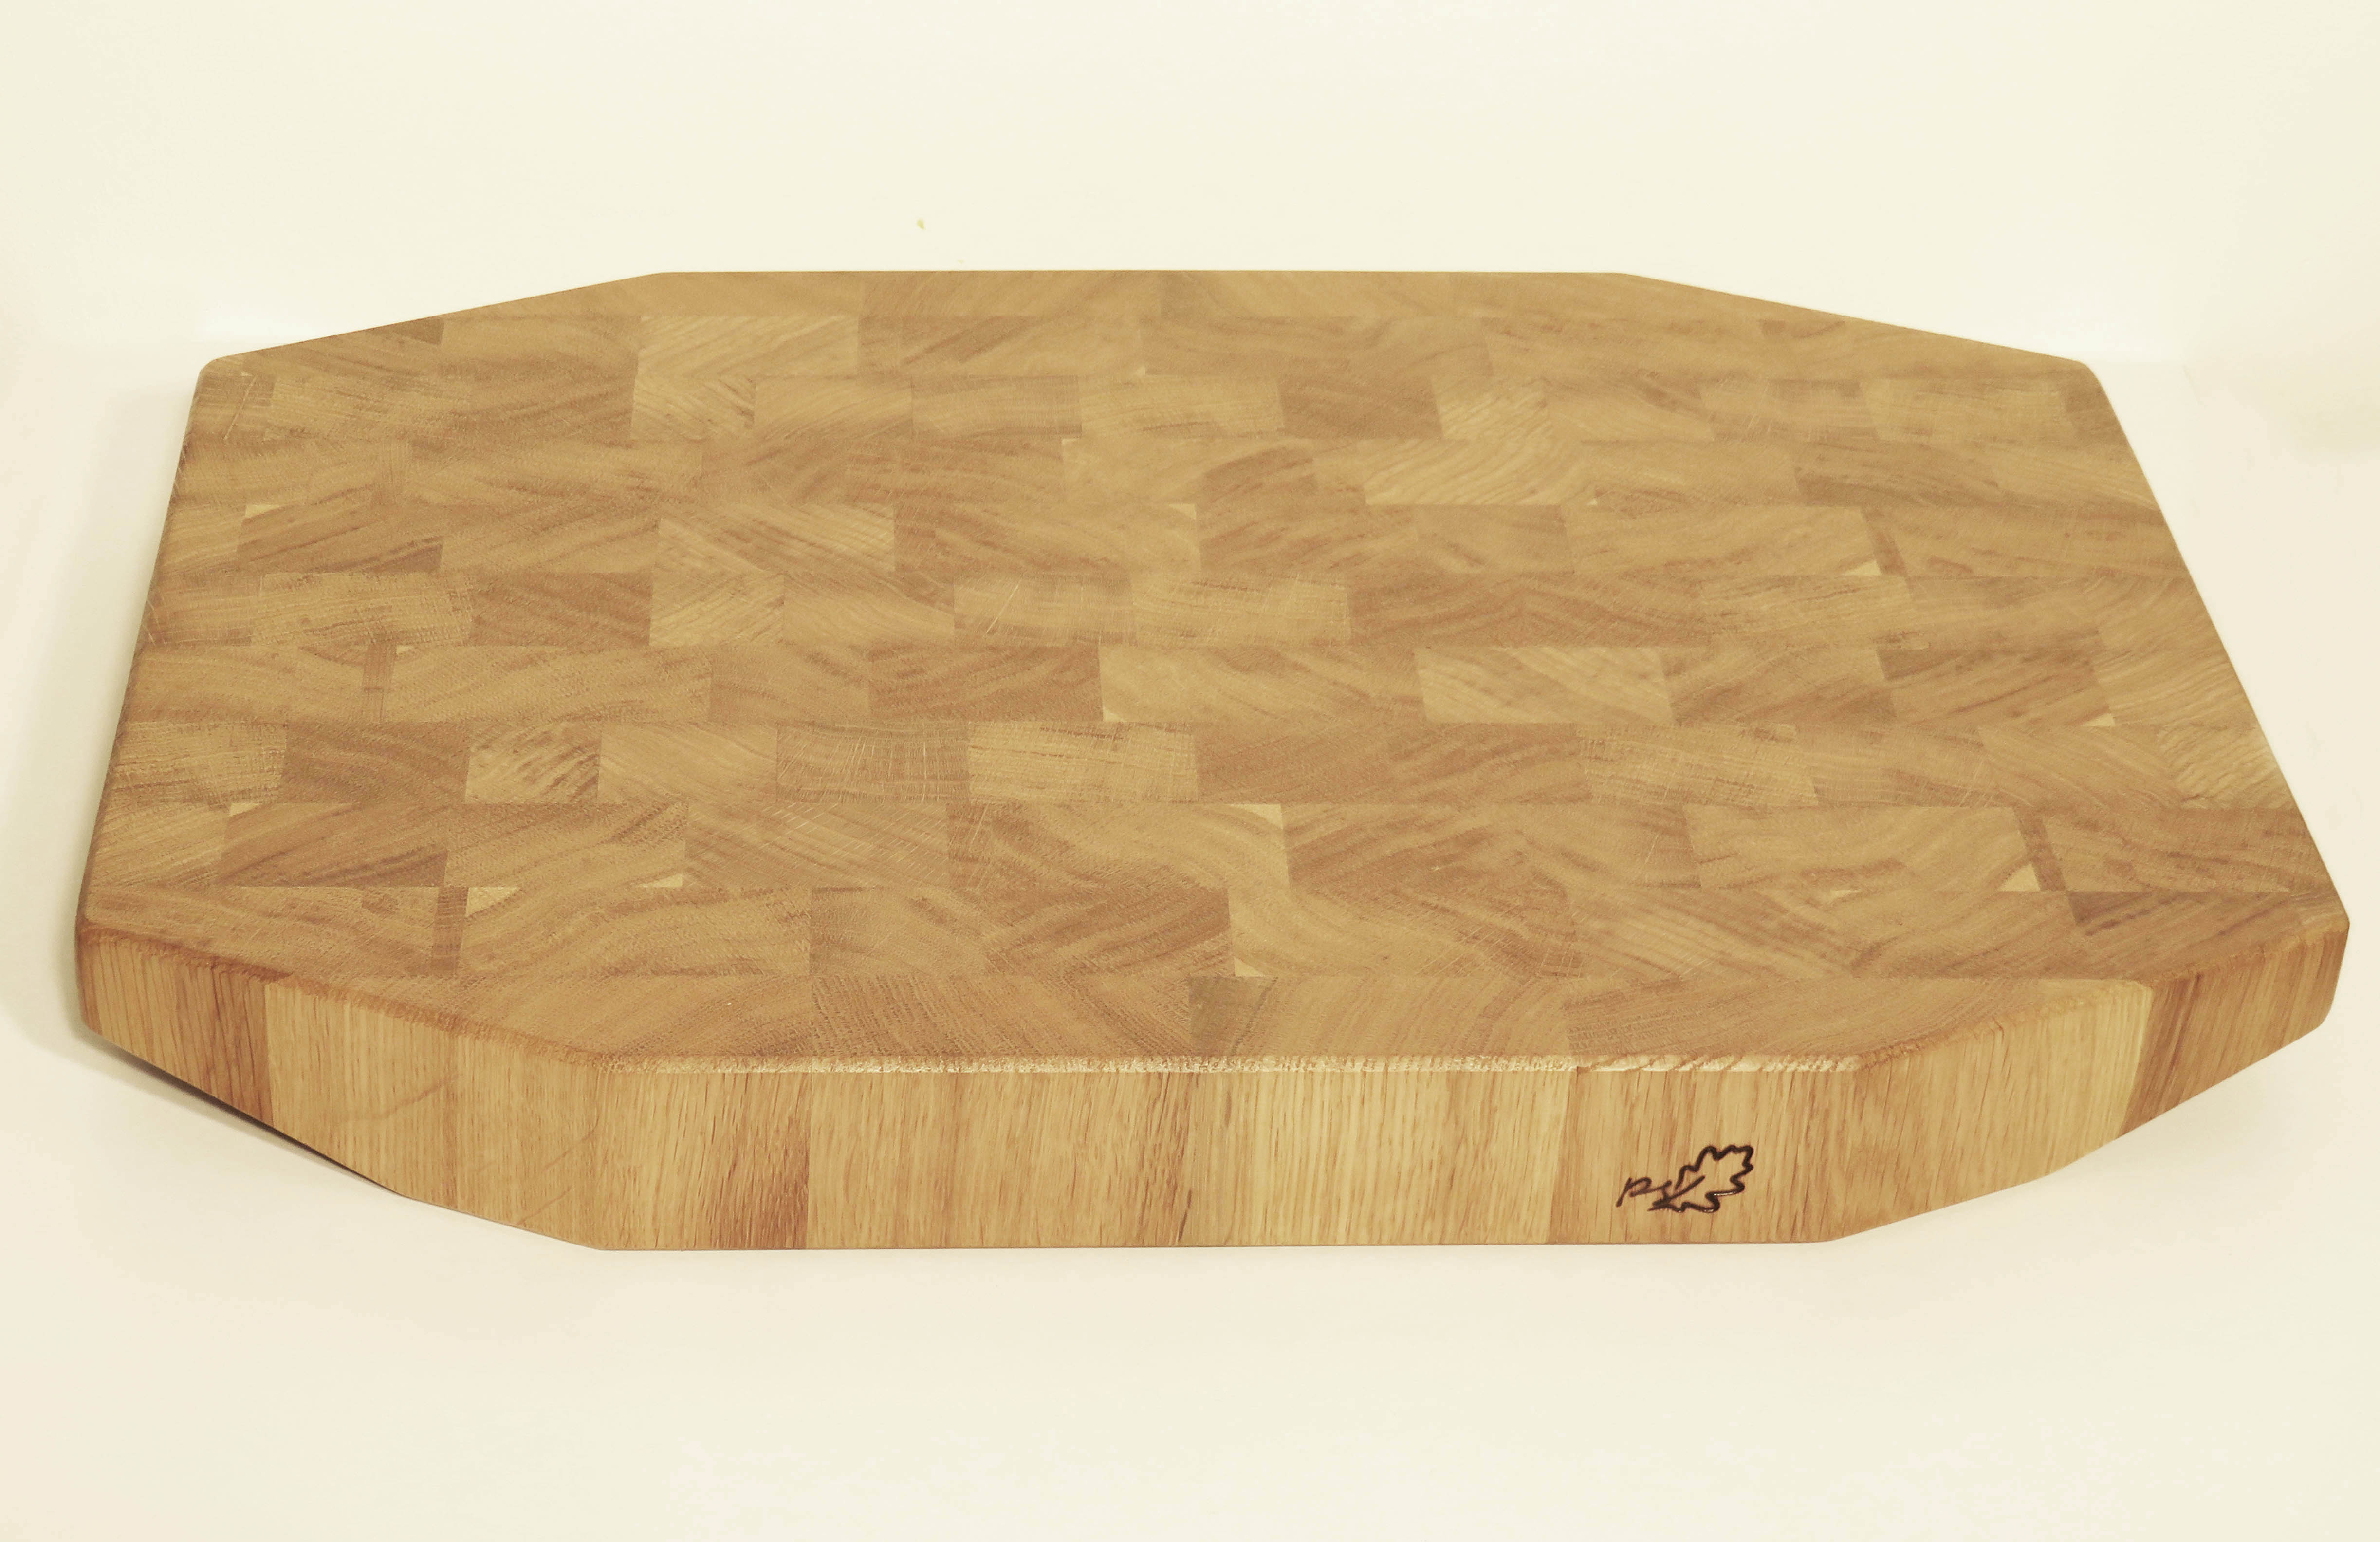 dębowa deska, blok kuchenny z drewna dębowego